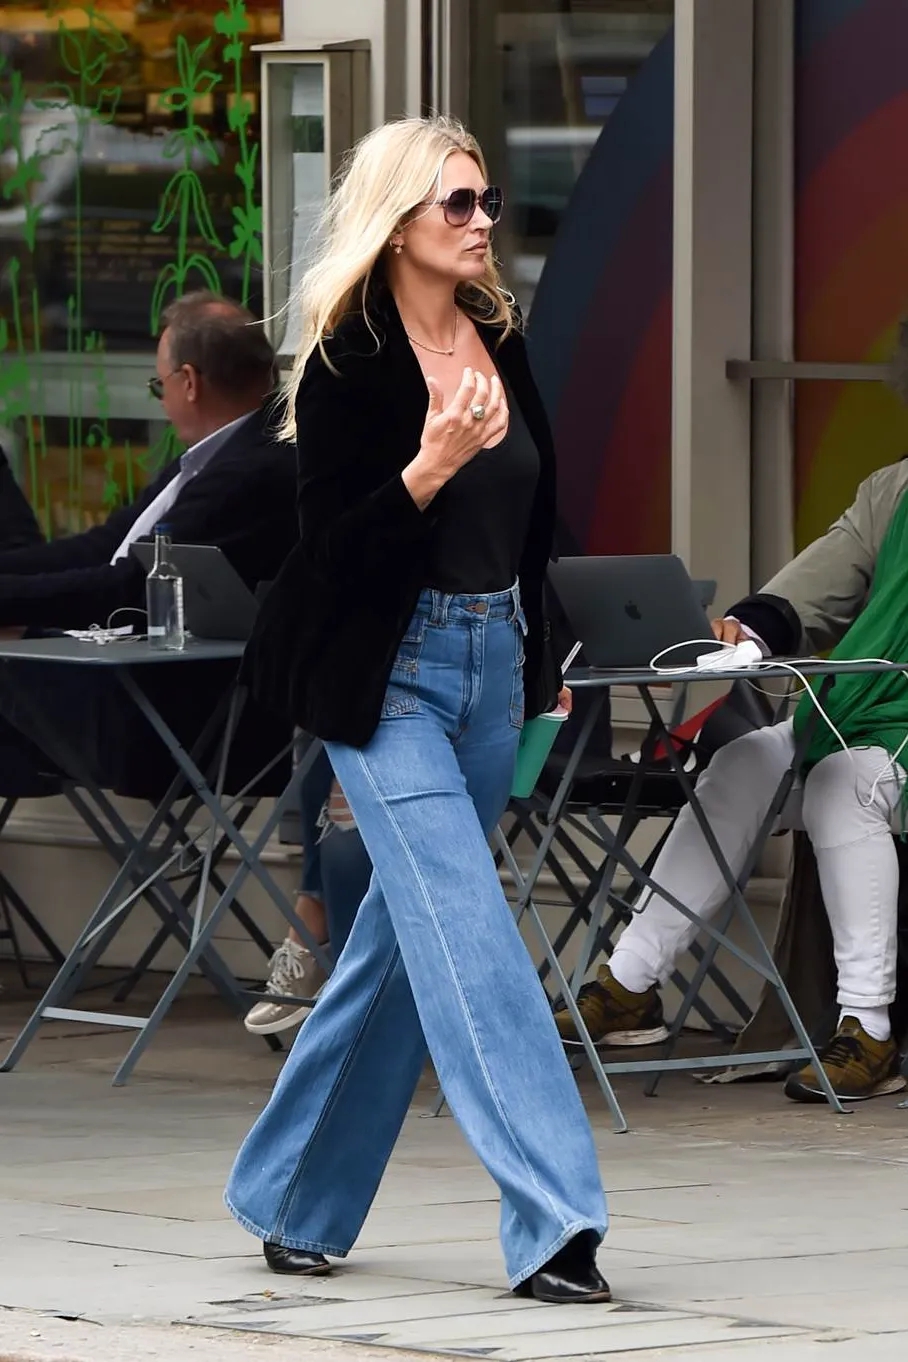 Đẳng cấp thời trang của Kate Moss ở tuổi U50: Phối đồ đơn giản vẫn chuẩn sang xịn mịn - Ảnh 7.